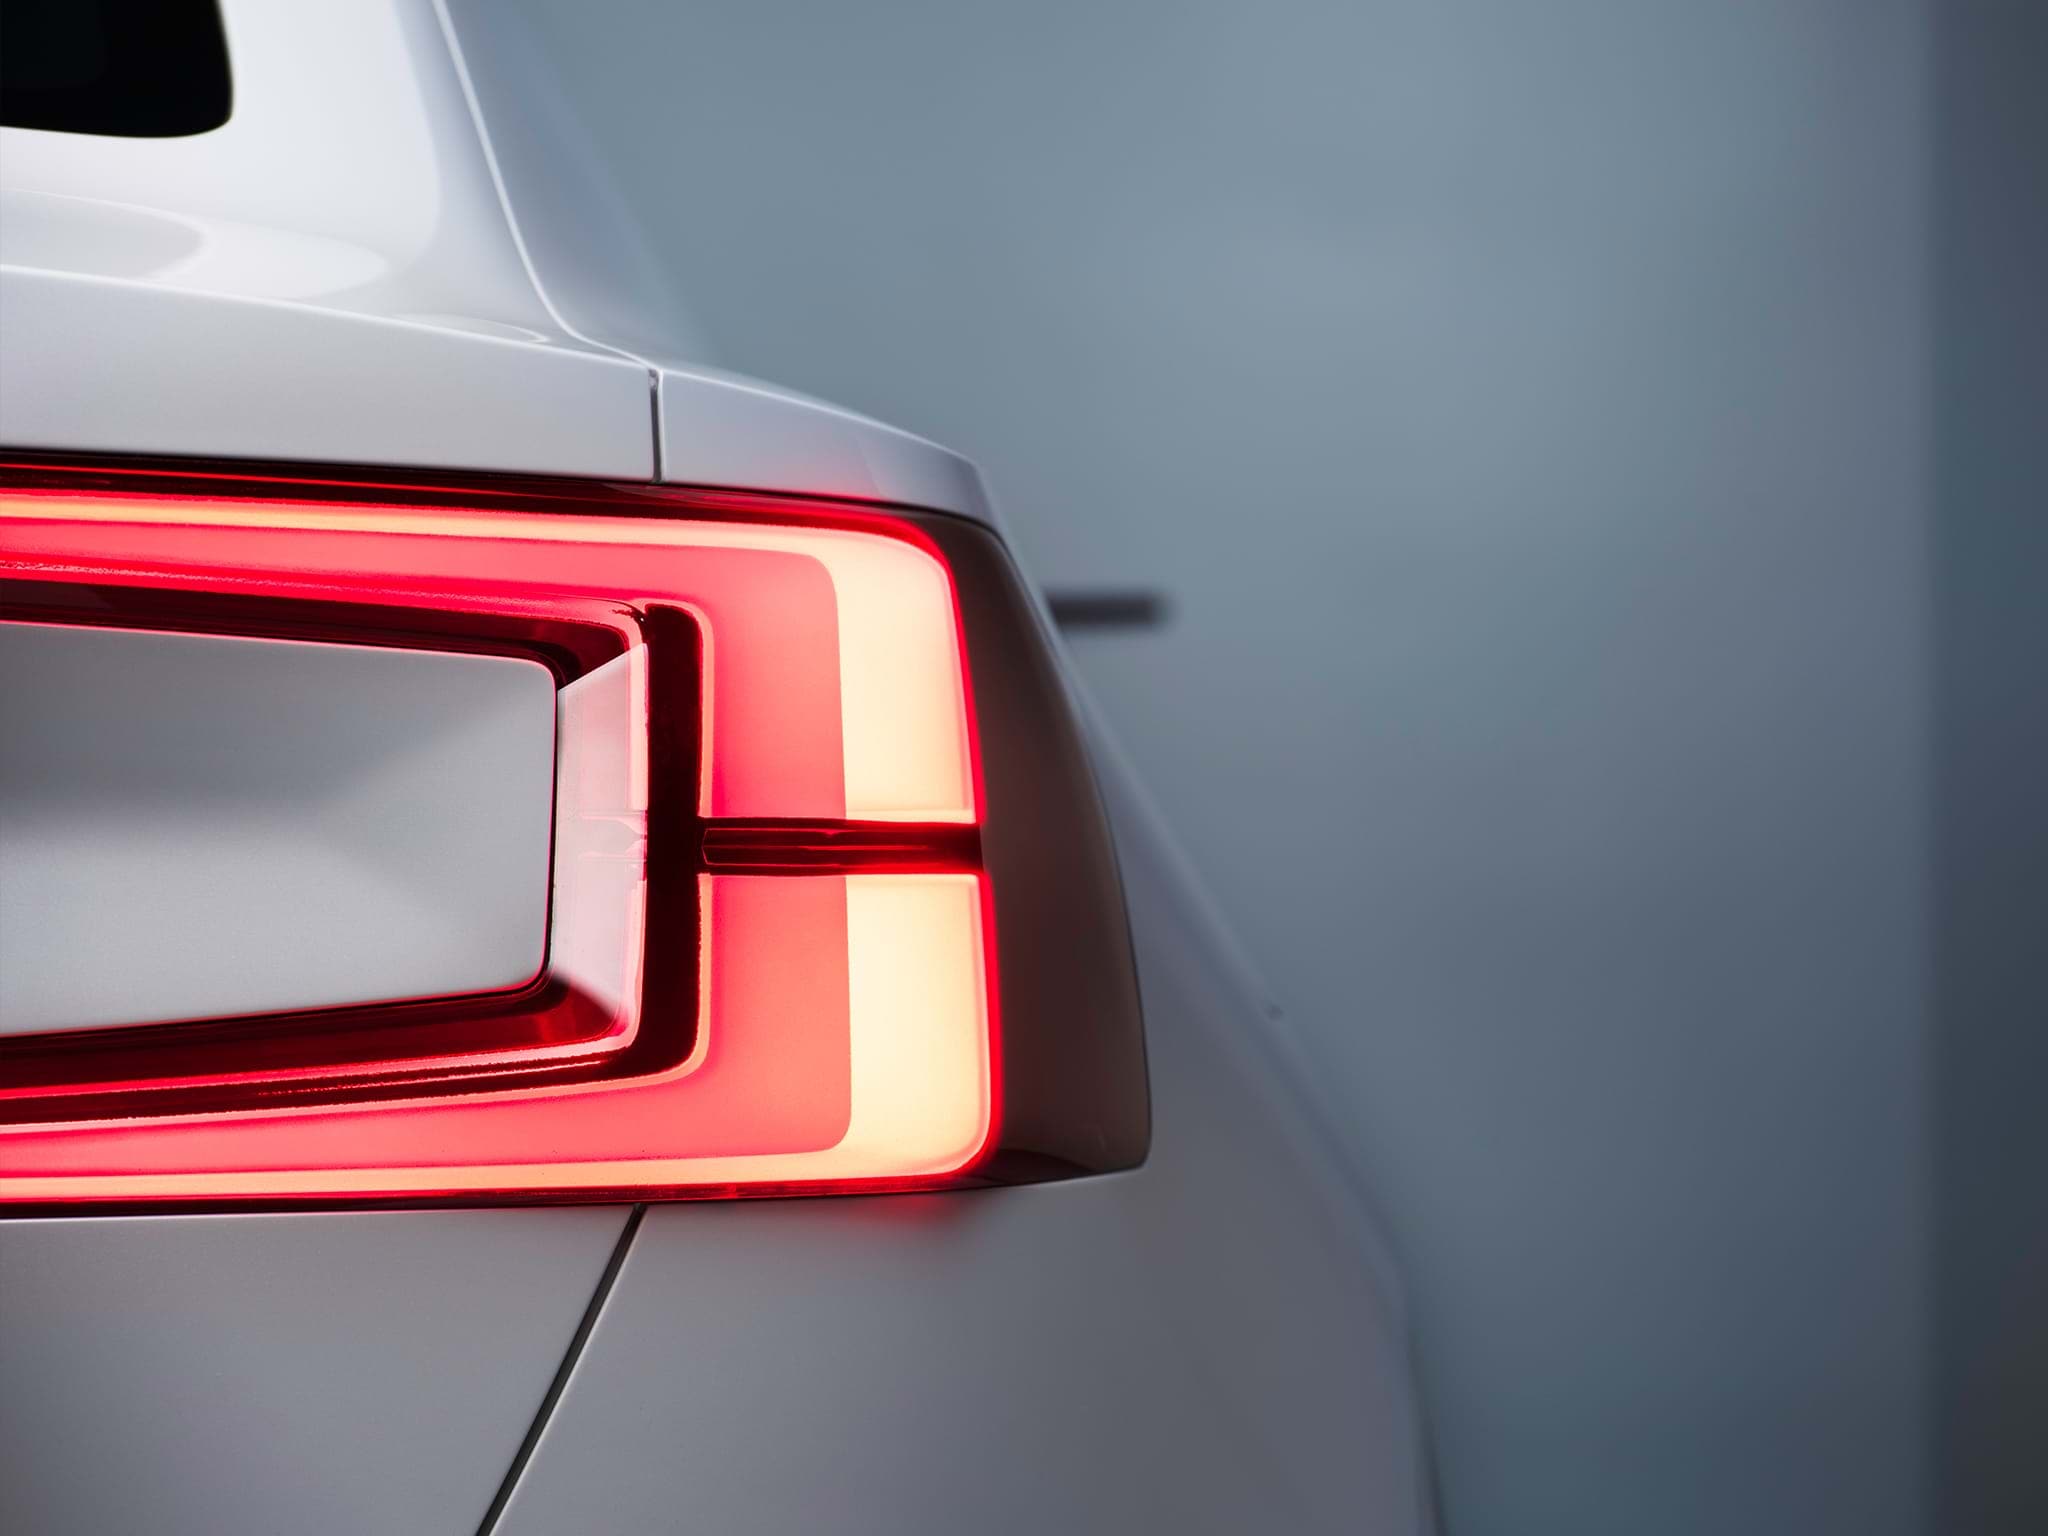 Pohled na zadní část koncepčního sedanu Volvo Concept 40 s rozsvícenými světly